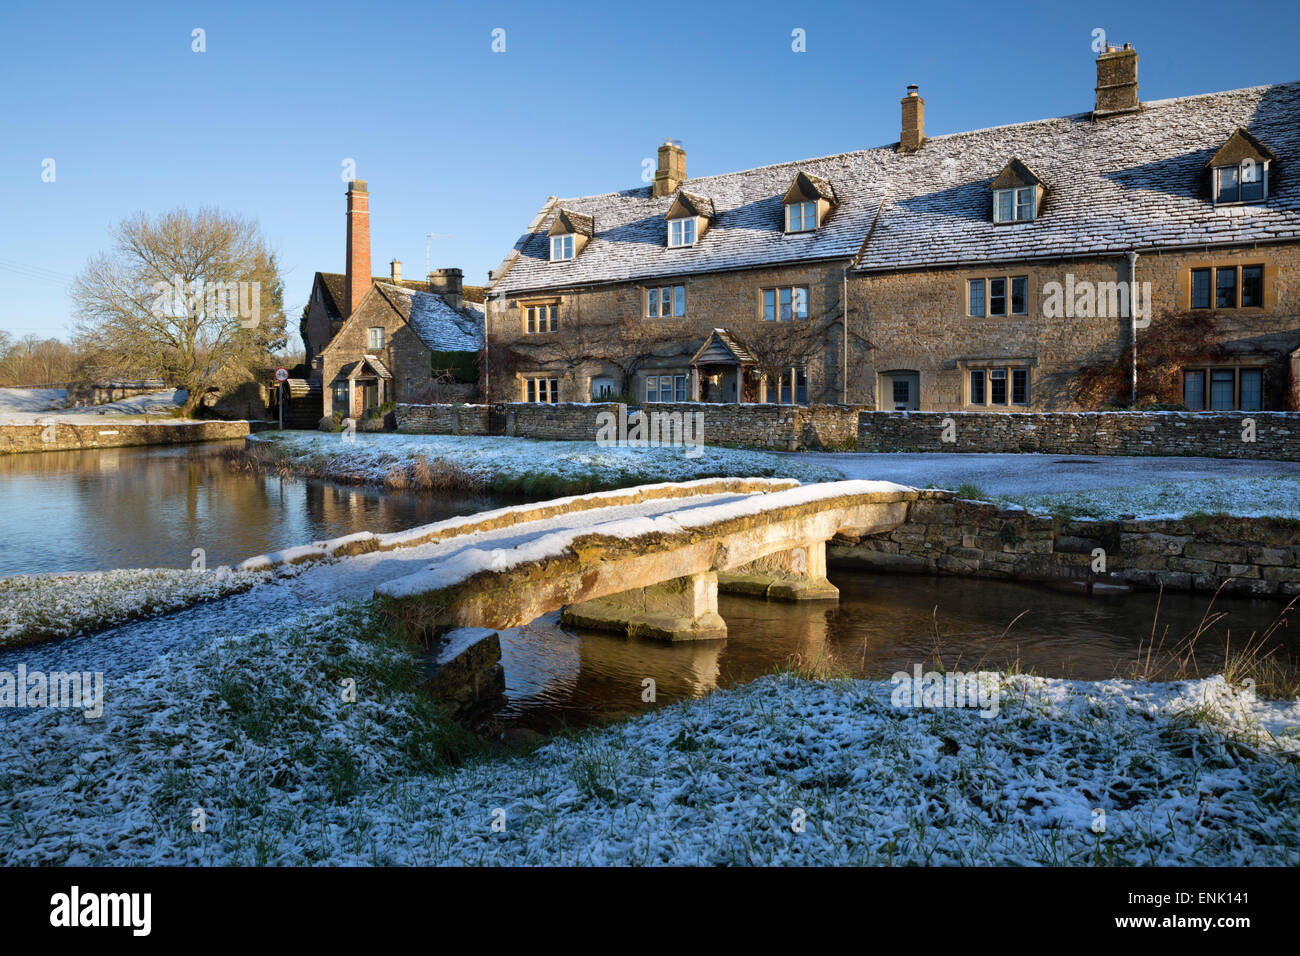 Pont en pierre de Cotswold et cottages dans la neige, Lower Slaughter, Cotswolds, Gloucestershire, Angleterre, Royaume-Uni, Europe Banque D'Images